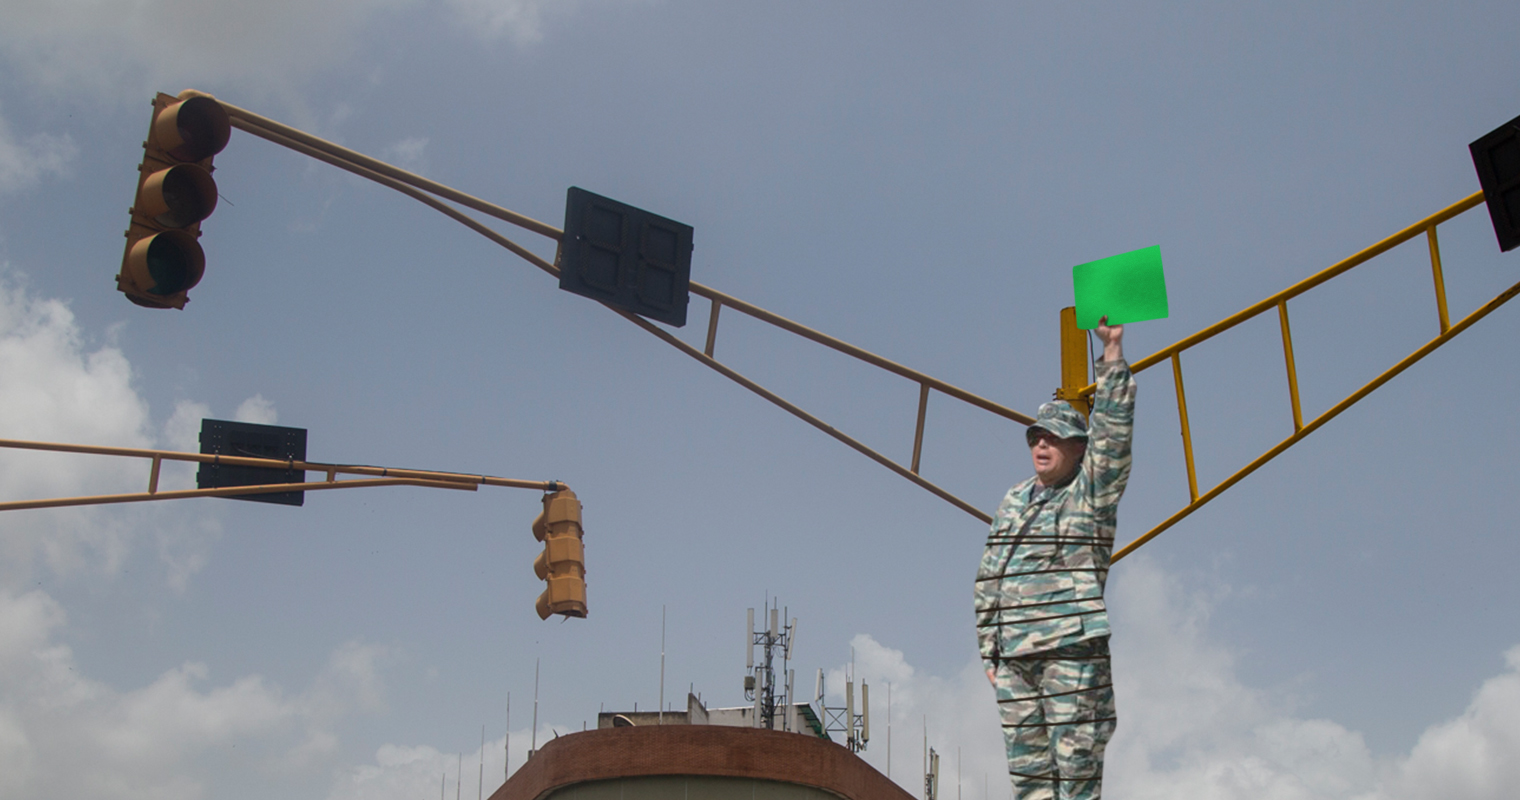 Gobierno reemplaza semáforo dañado con miliciano amarrado a un poste